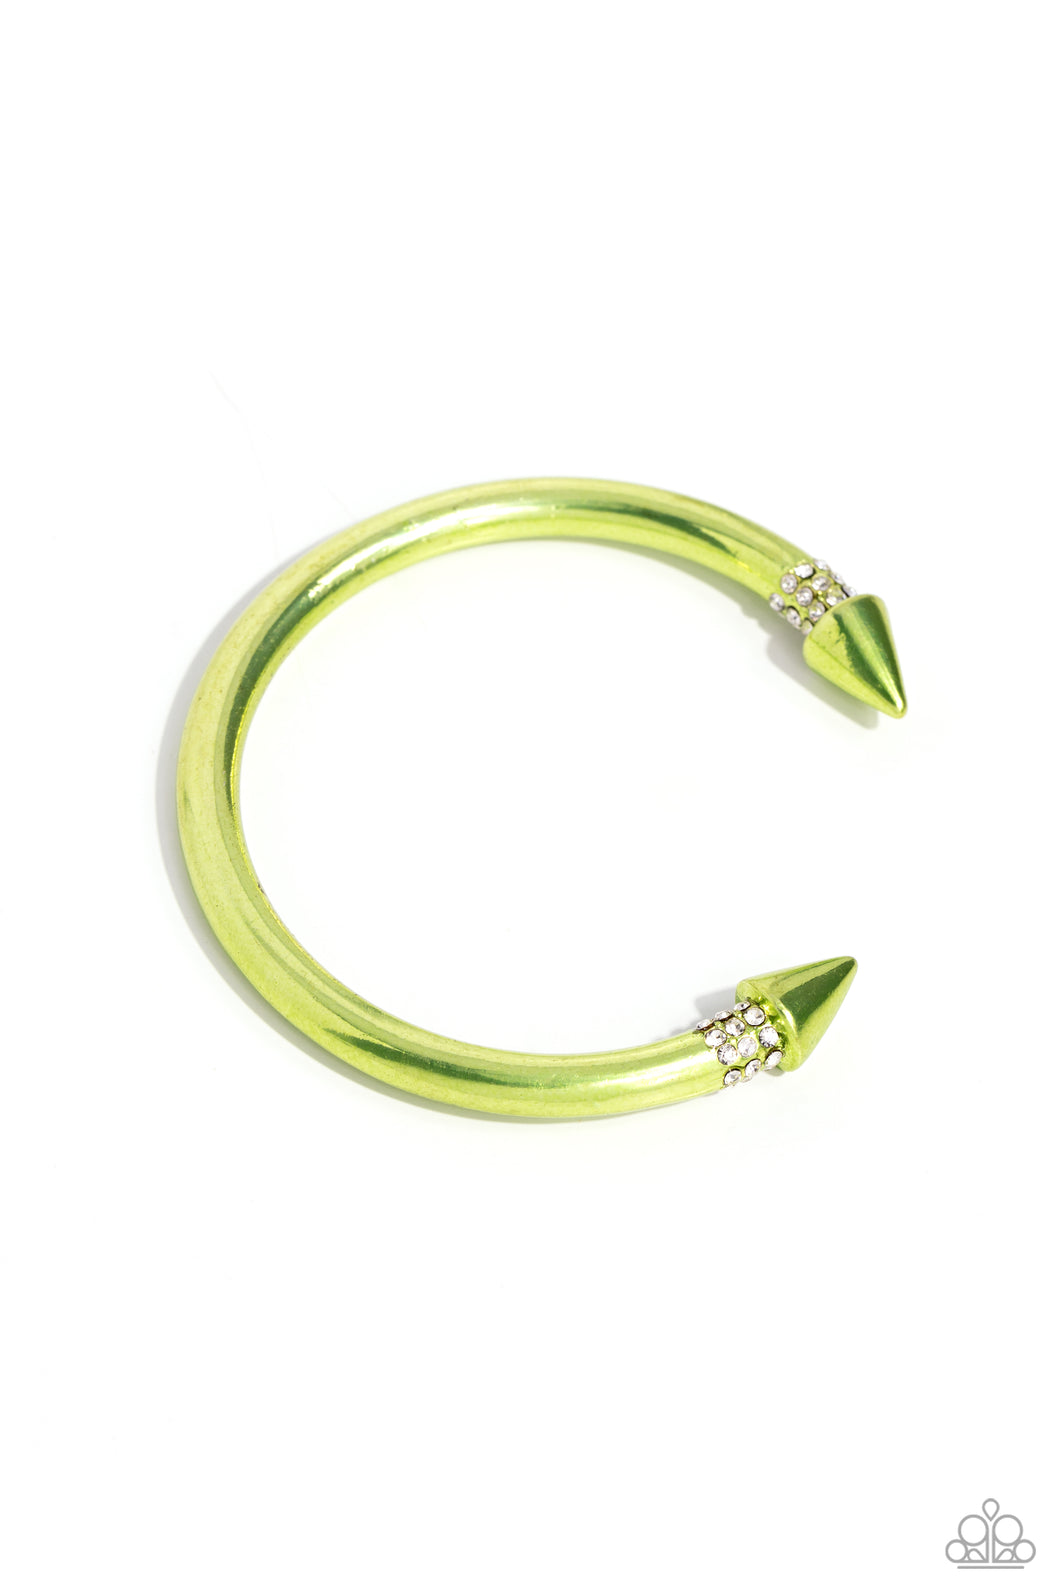 Punky Plot Twist - Green Cuff Bracelet